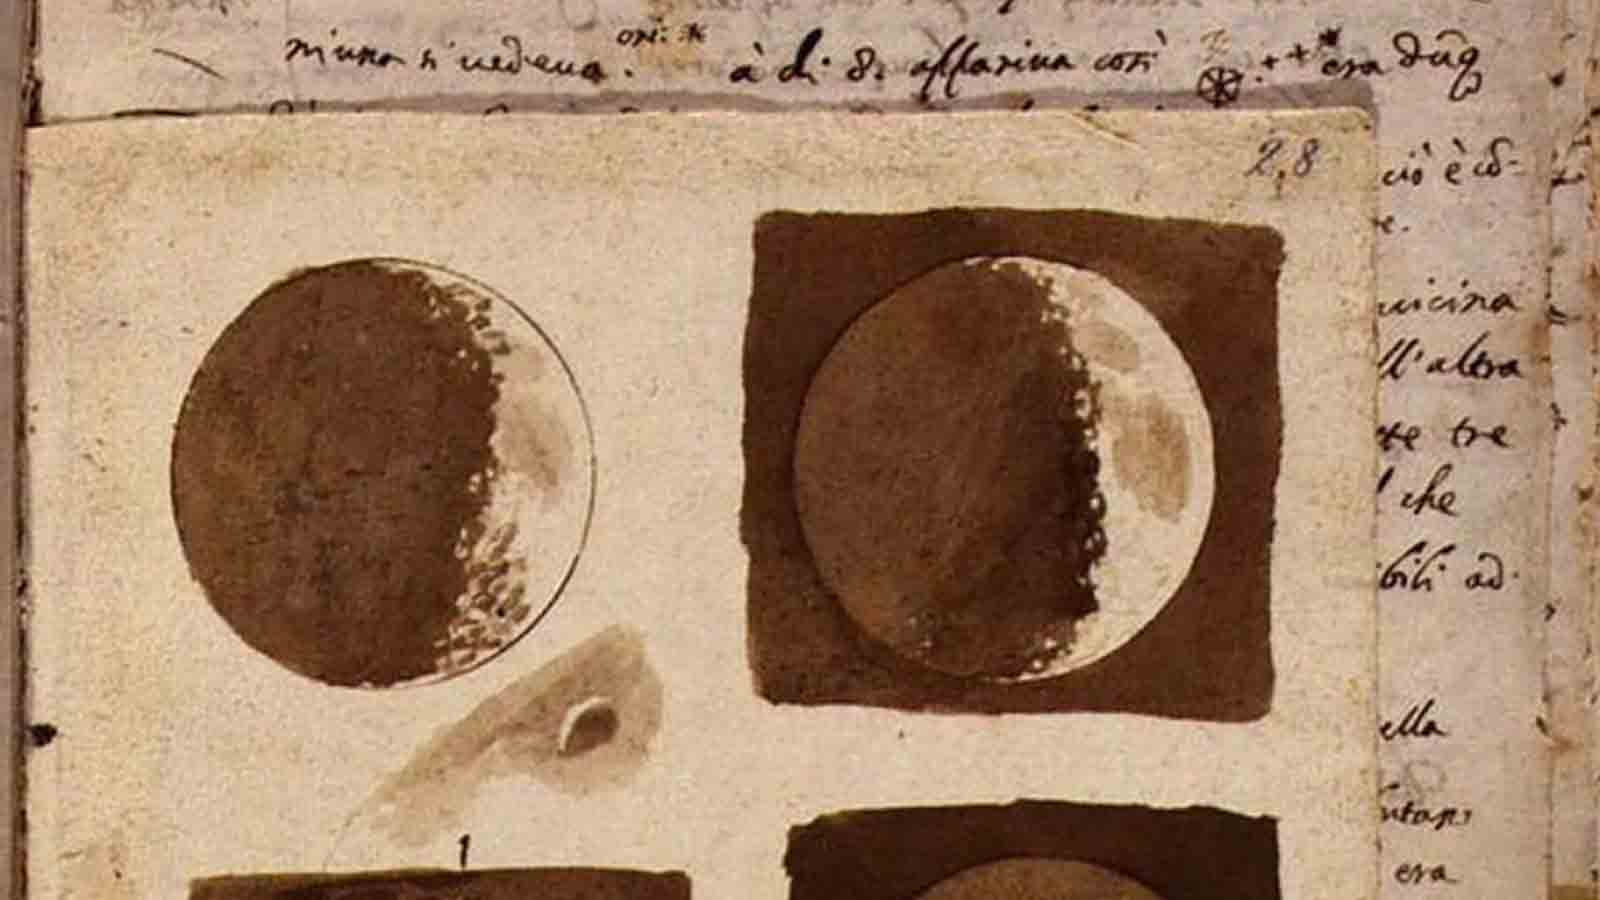 C3 - La Luna de Galileo: debate y divulgación científica en el Renacimiento